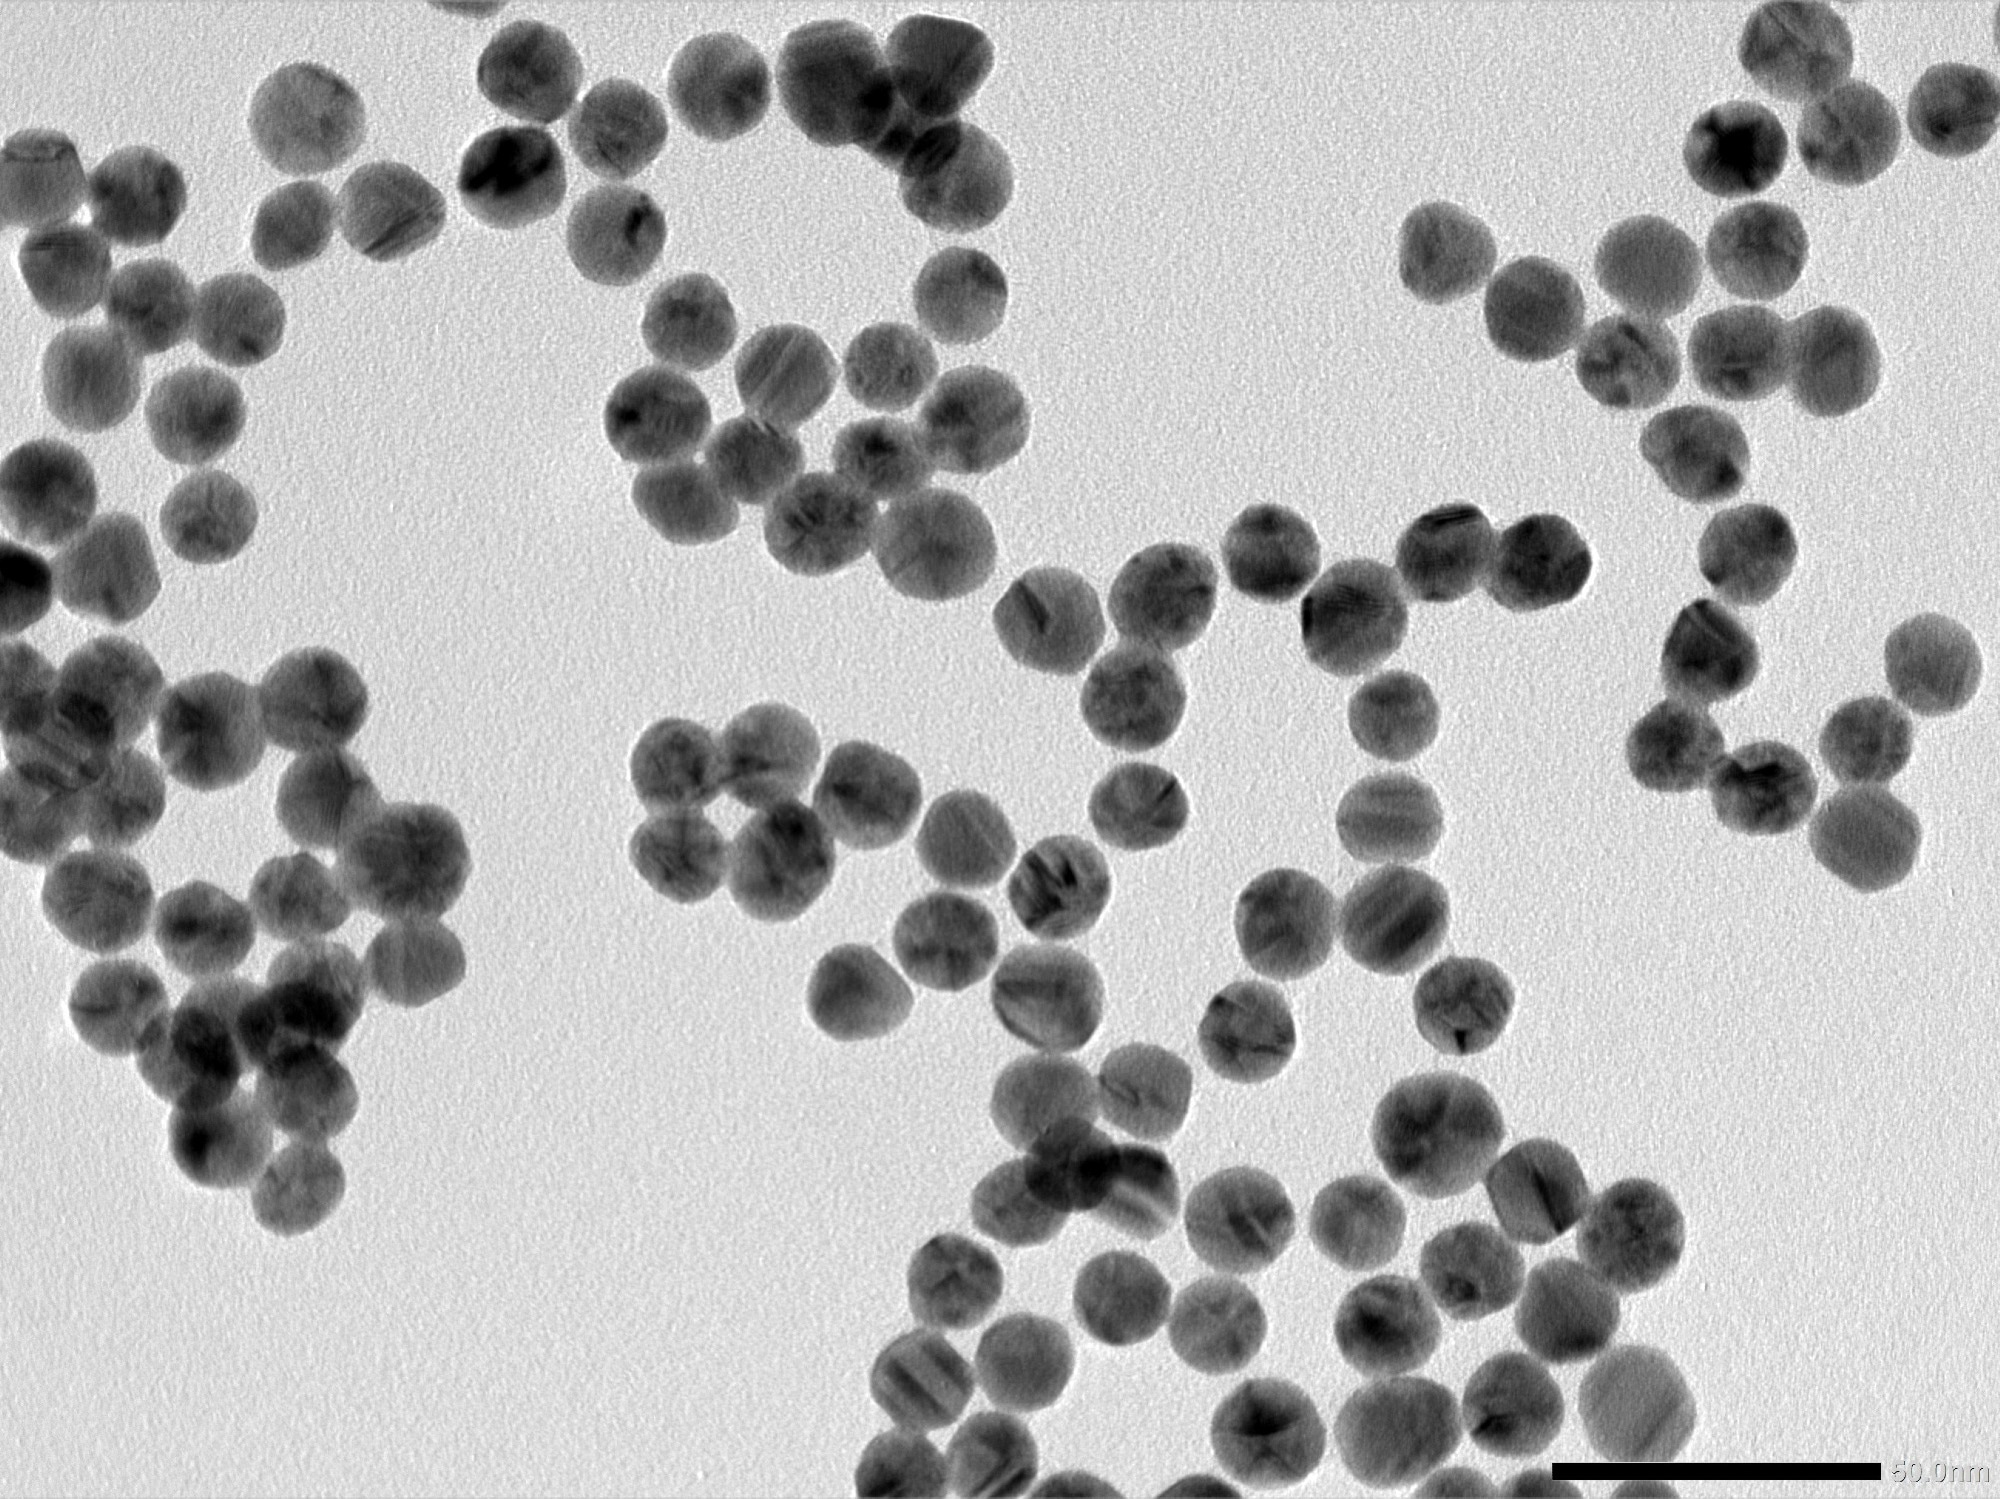 研究: ナノ粒子およびその他のナノ構造と病原体の制御: ベンチからワクチンまで。 画像クレジット: nararat yong / Shutterstock.com